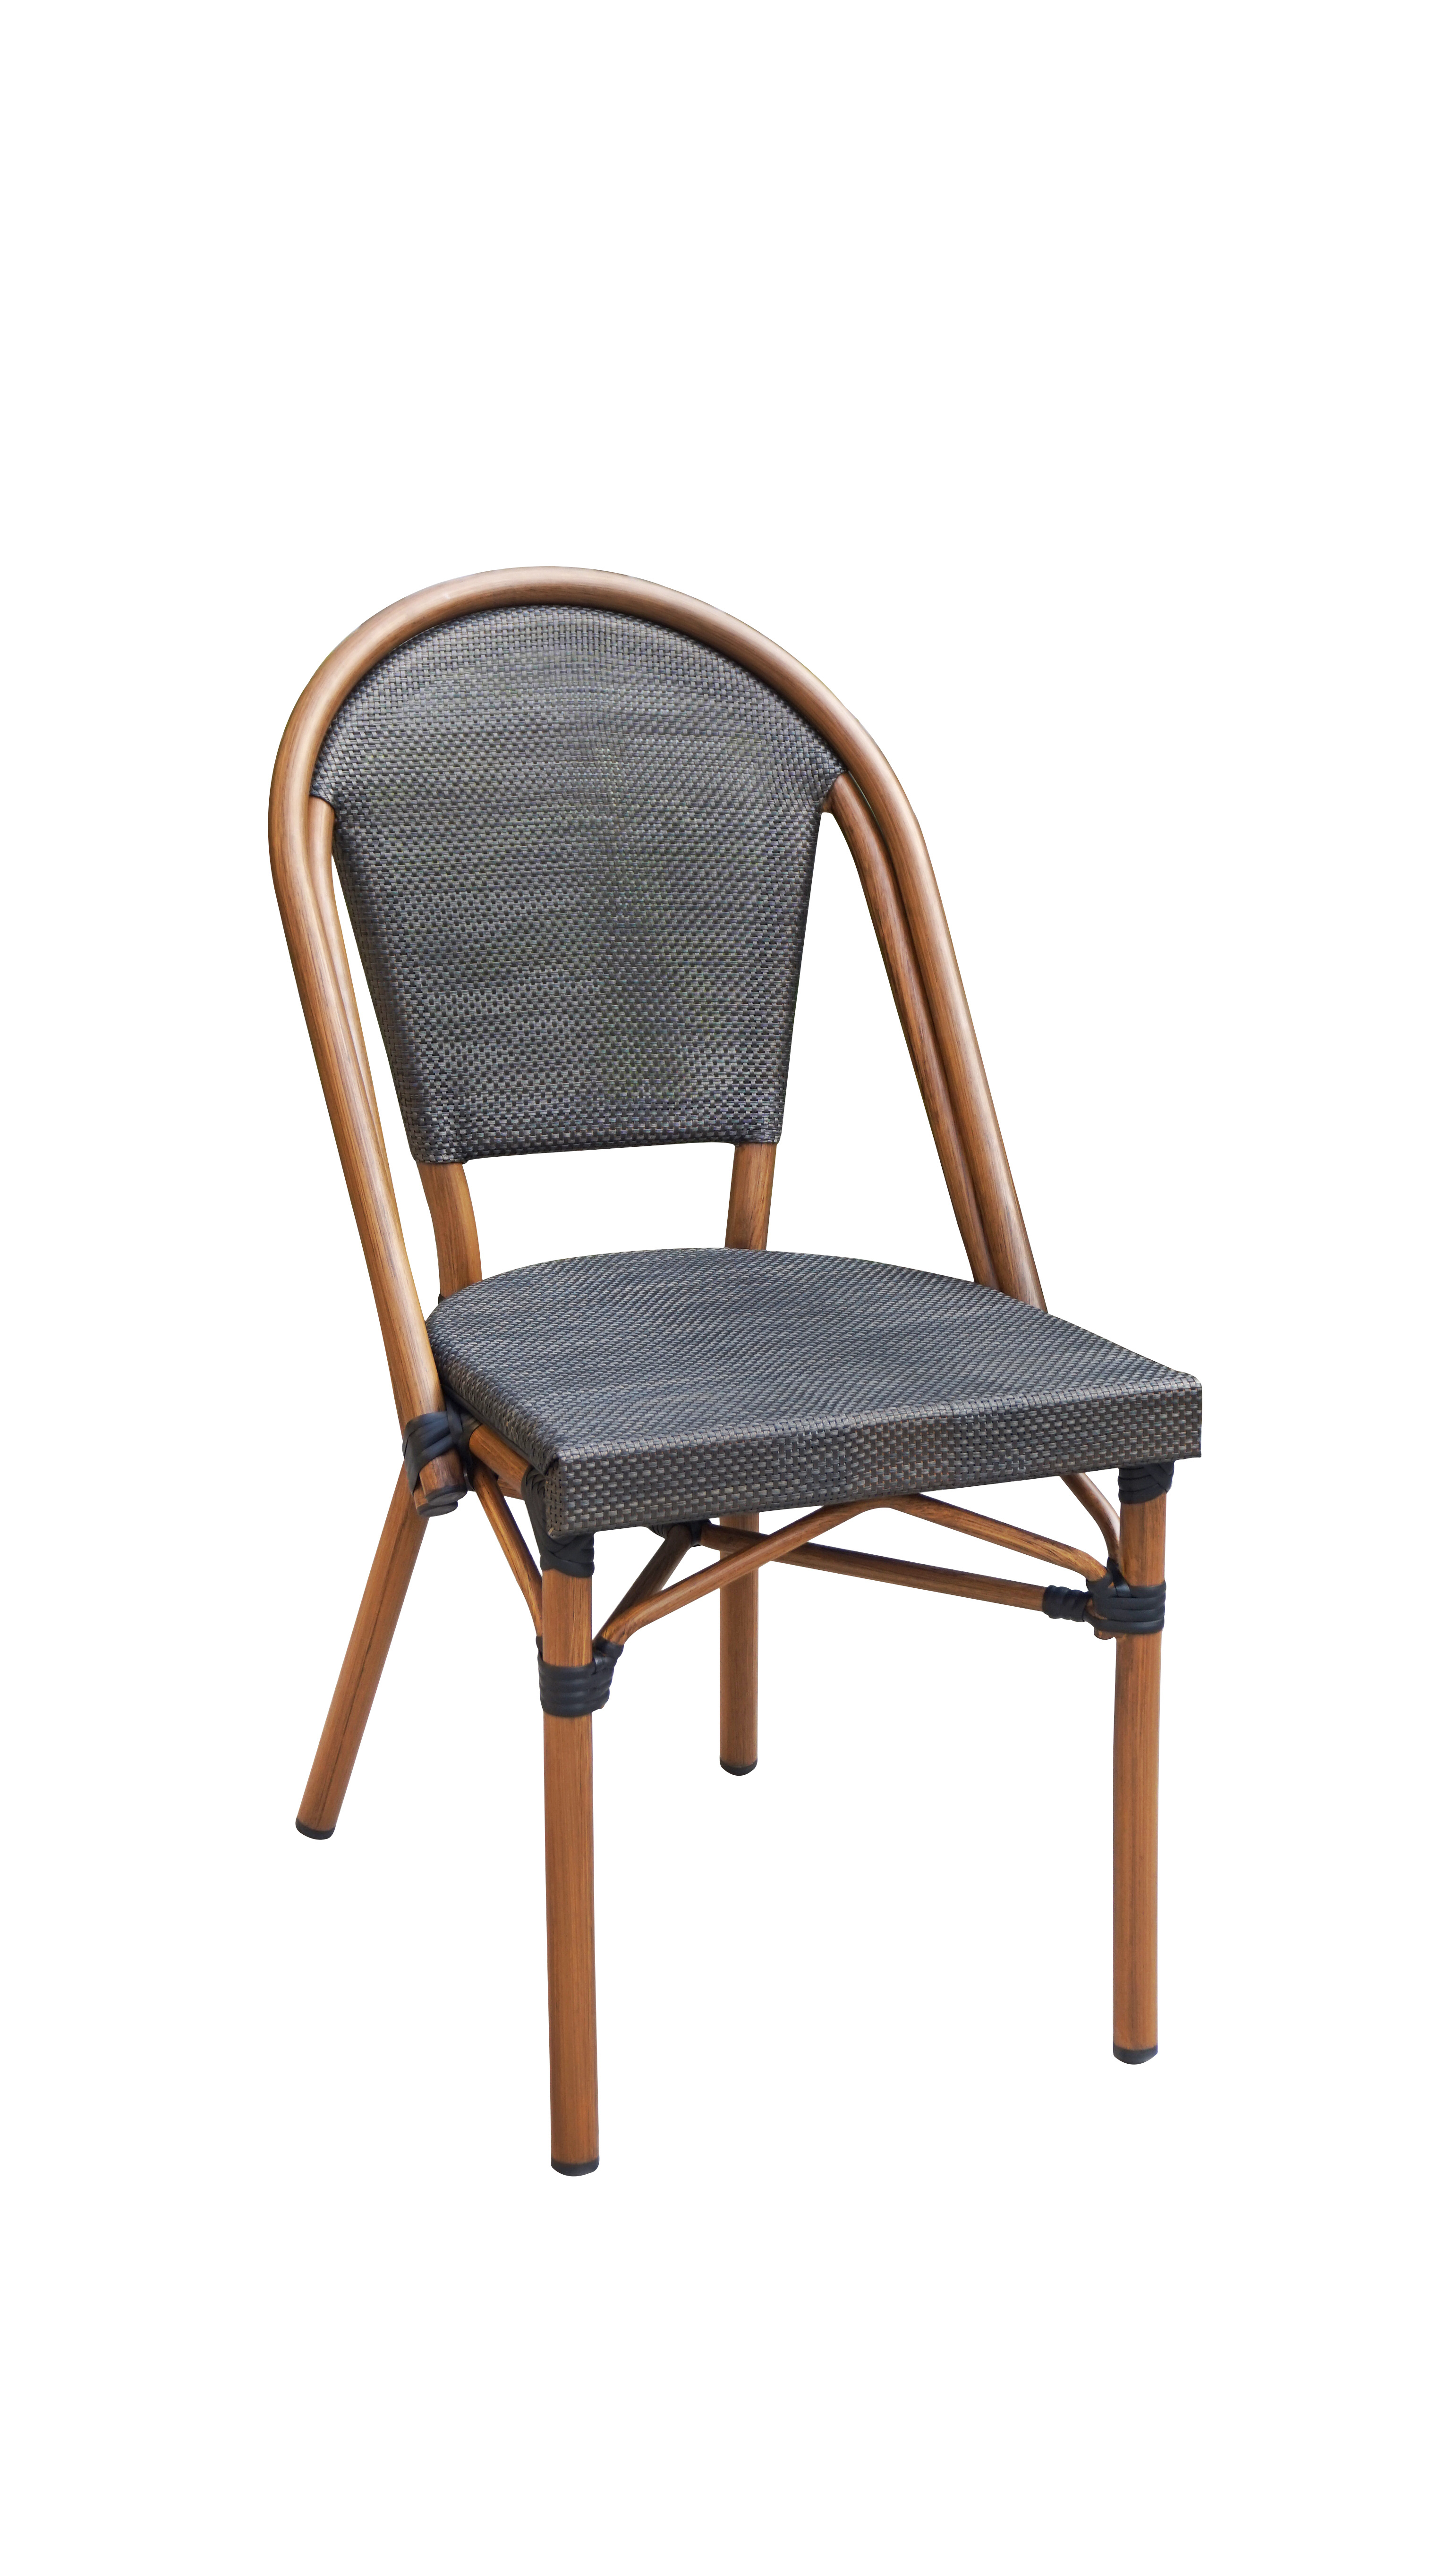 SKA France vous propose le produit Chaise Mara - en stock - SKA France -  fabricant de banquettes - specialiste mobilier